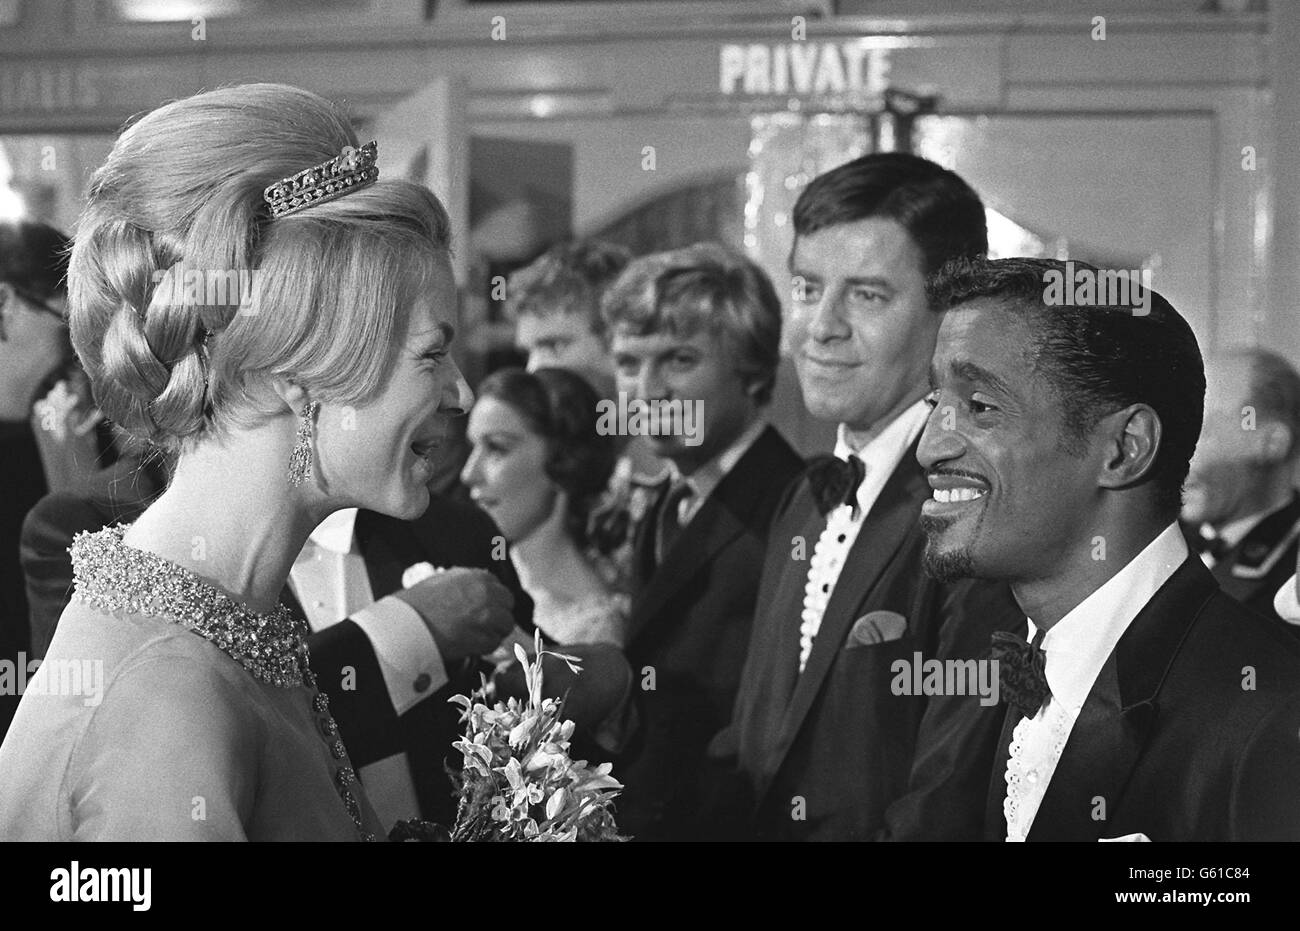 La duchesse de Kent sourit avec le comédien américain Sammy Davies, jnr, quand les stars ont été présentées après le Royal Variety Show au London Palladium. Avec Sammy Lewis, il y a Jerry Lewis (au centre) et Tommy Steele en Grande-Bretagne. Banque D'Images